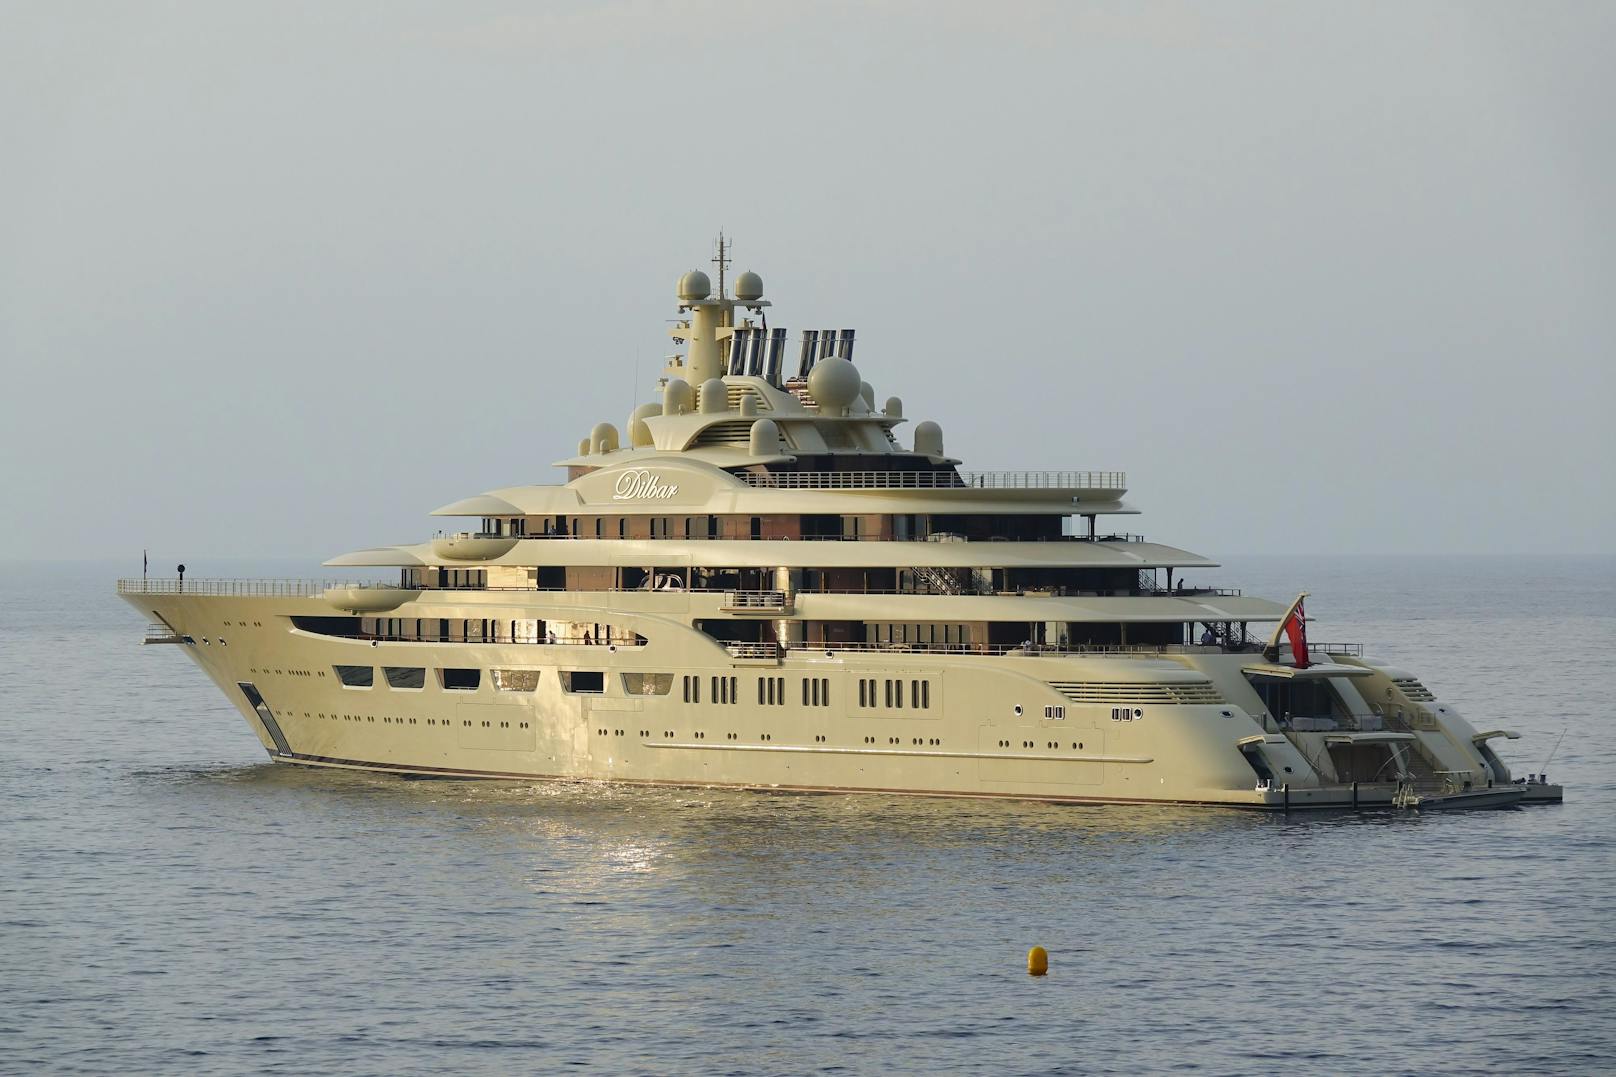 Die Jacht des russischen Milliardärs Alisher Usmanow ist offenbar in Hamburg beschlagnahmt worden. (Archivbild)